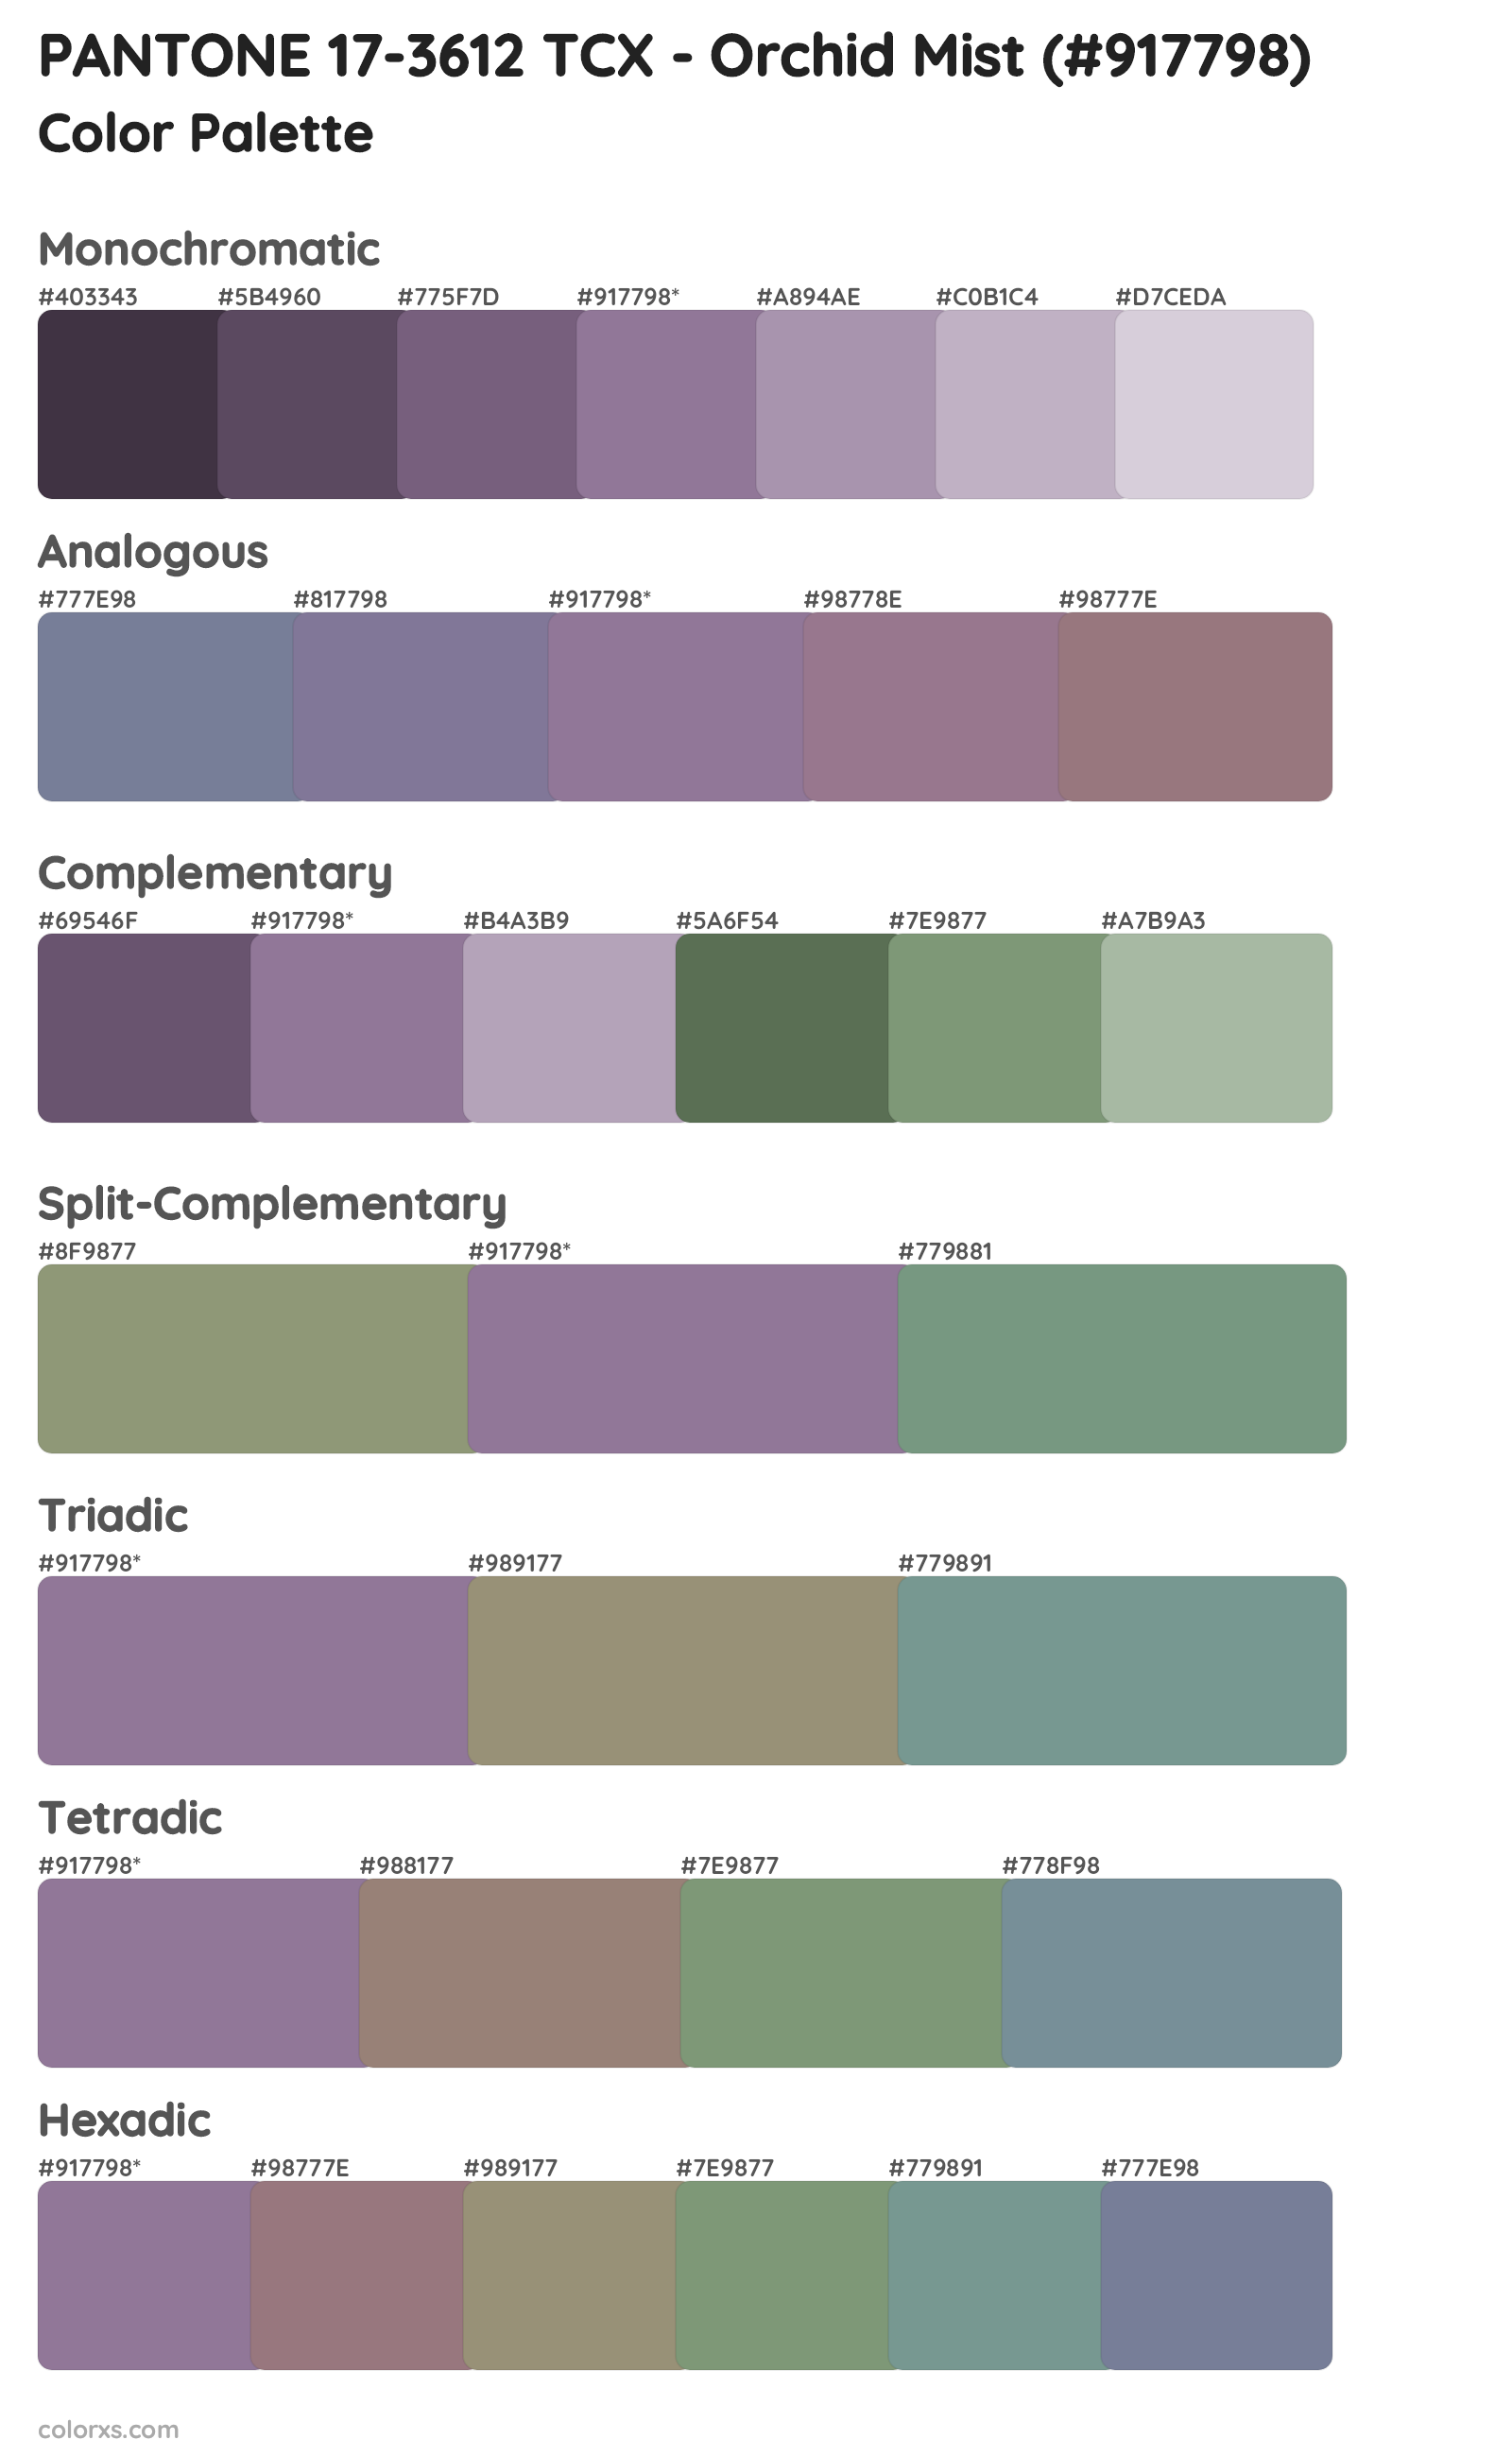 PANTONE 17-3612 TCX - Orchid Mist Color Scheme Palettes